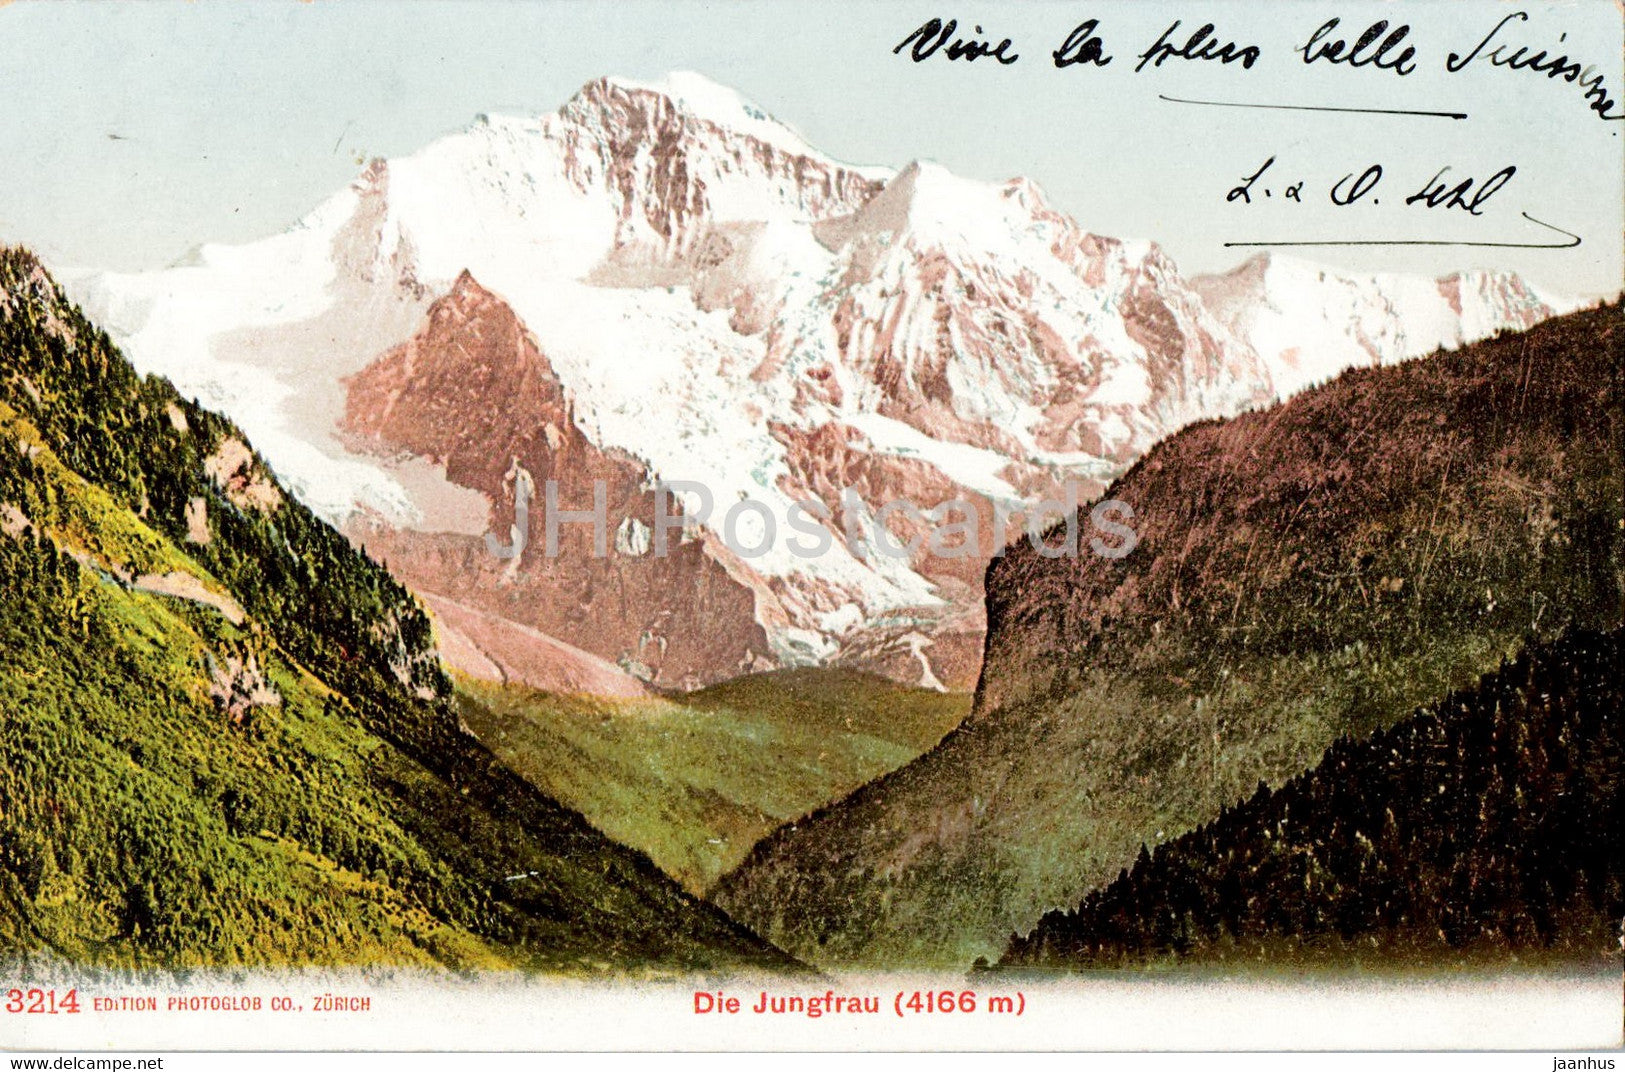 Die Jungfrau 4166 m - 3214 - old postcard - Switzerland - used - JH Postcards